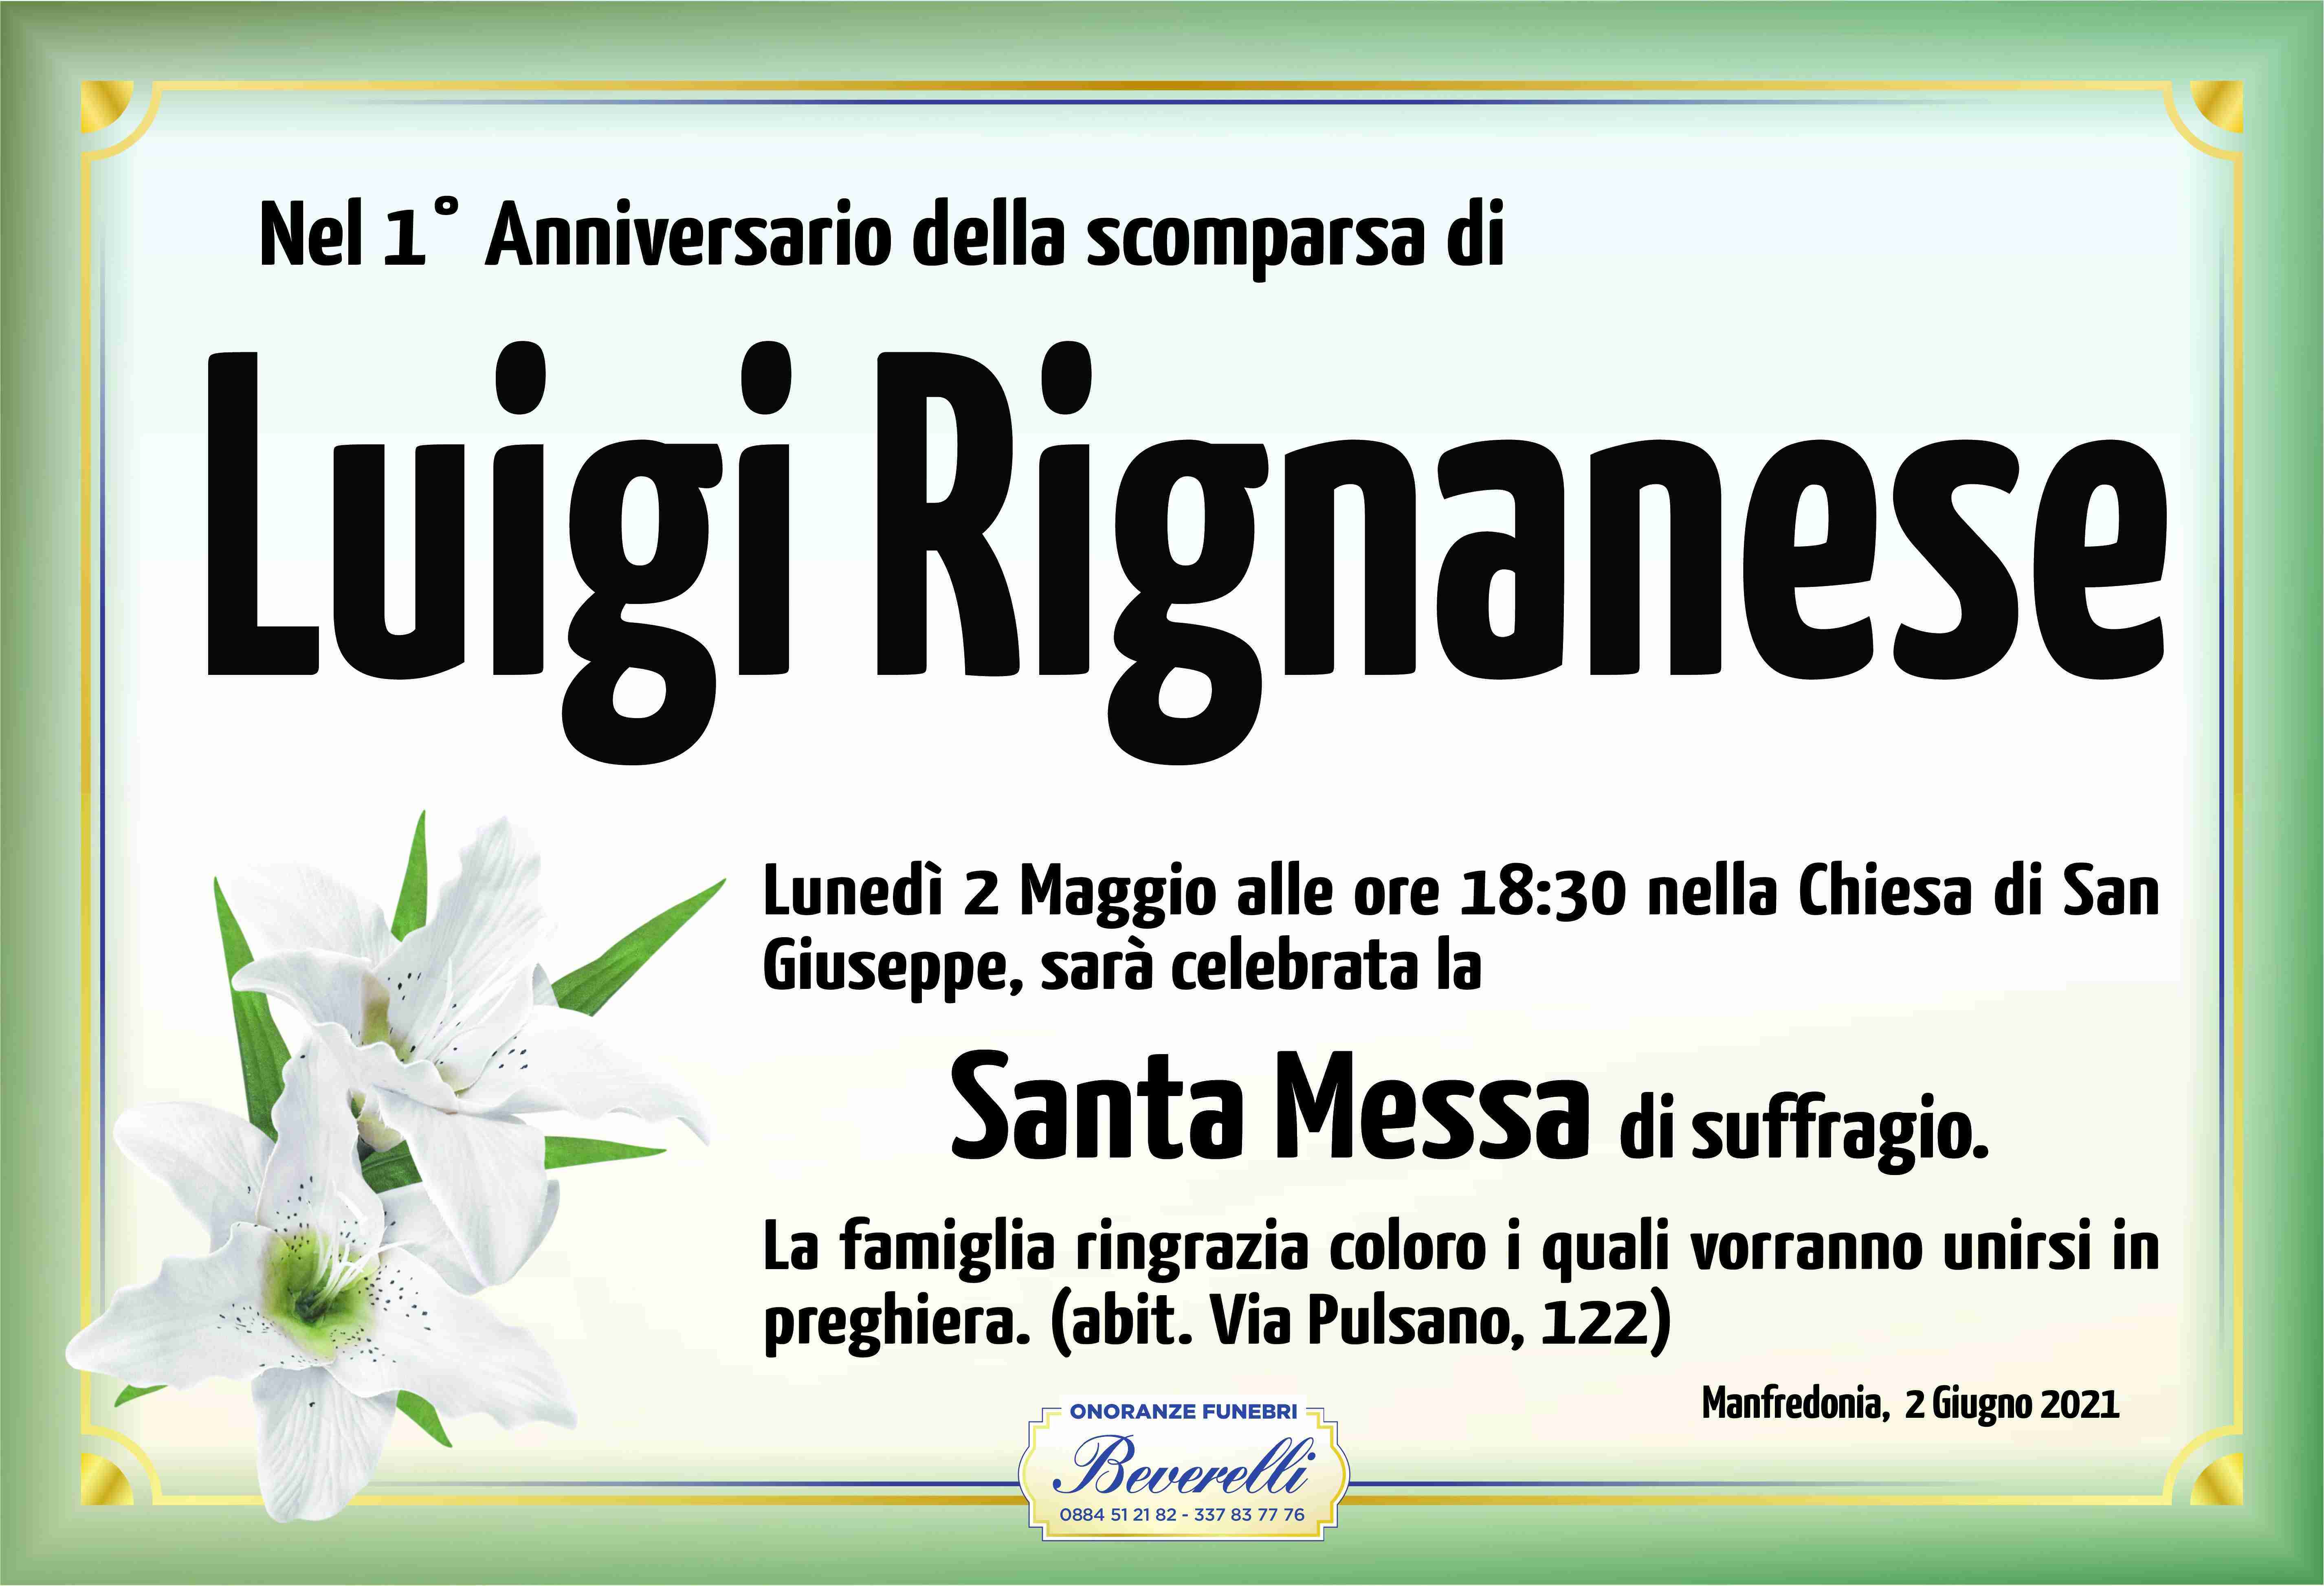 Luigi Rignanese